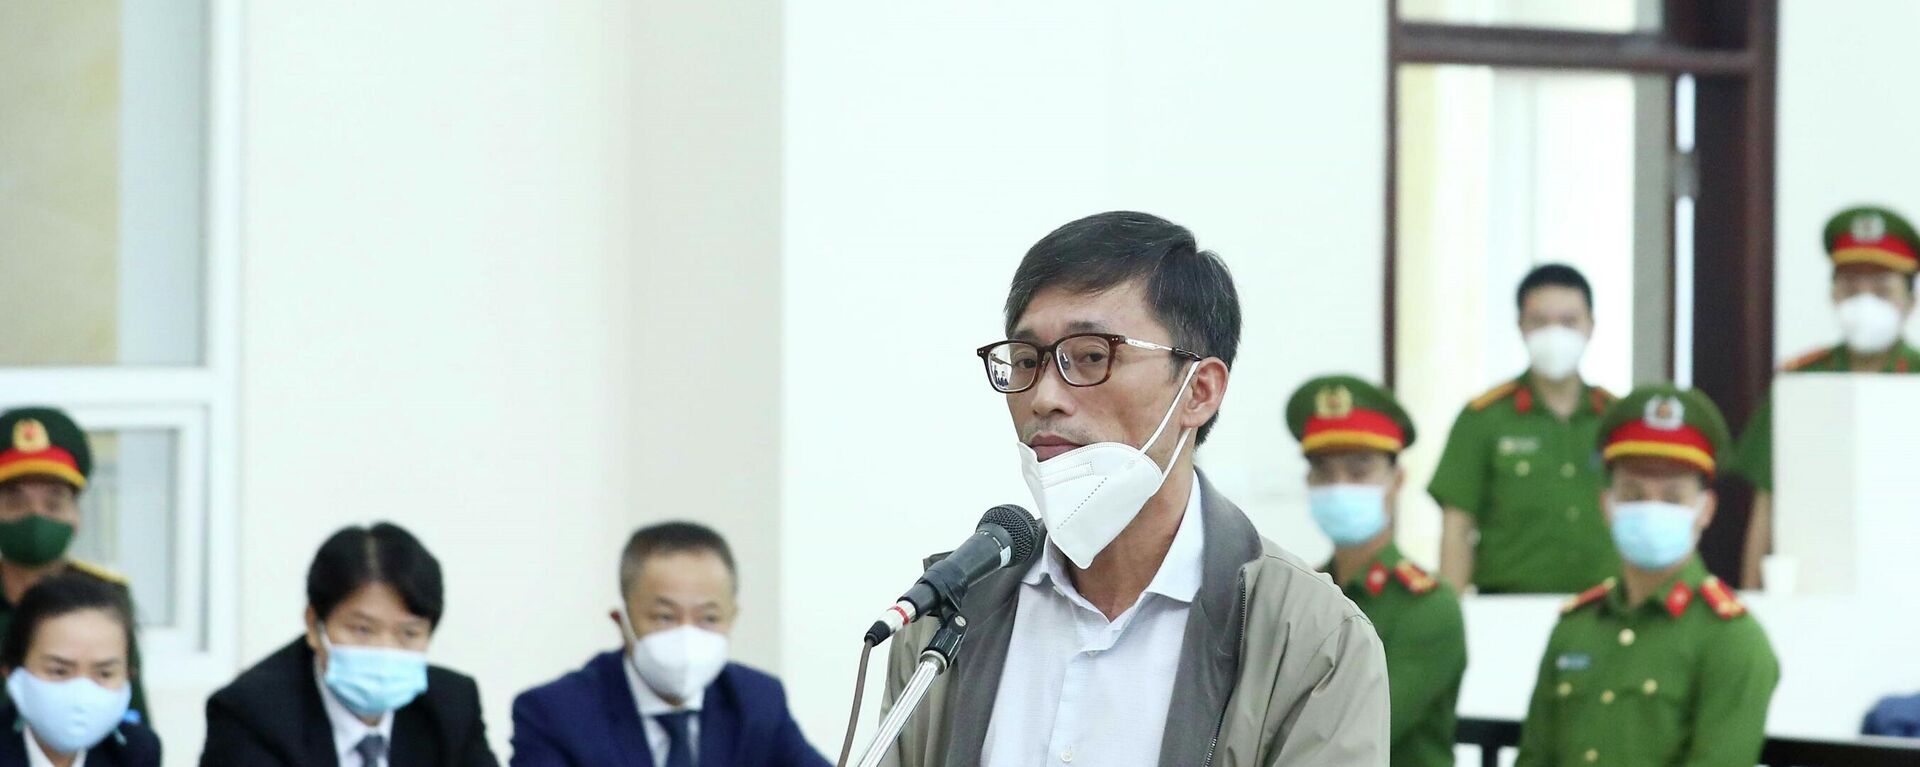 Bị cáo Nguyễn Duy Linh trả lời các câu hỏi của Hội đồng xét xử và đại diện Viện Kiểm sát tại phiên tòa. - Sputnik Việt Nam, 1920, 06.11.2021